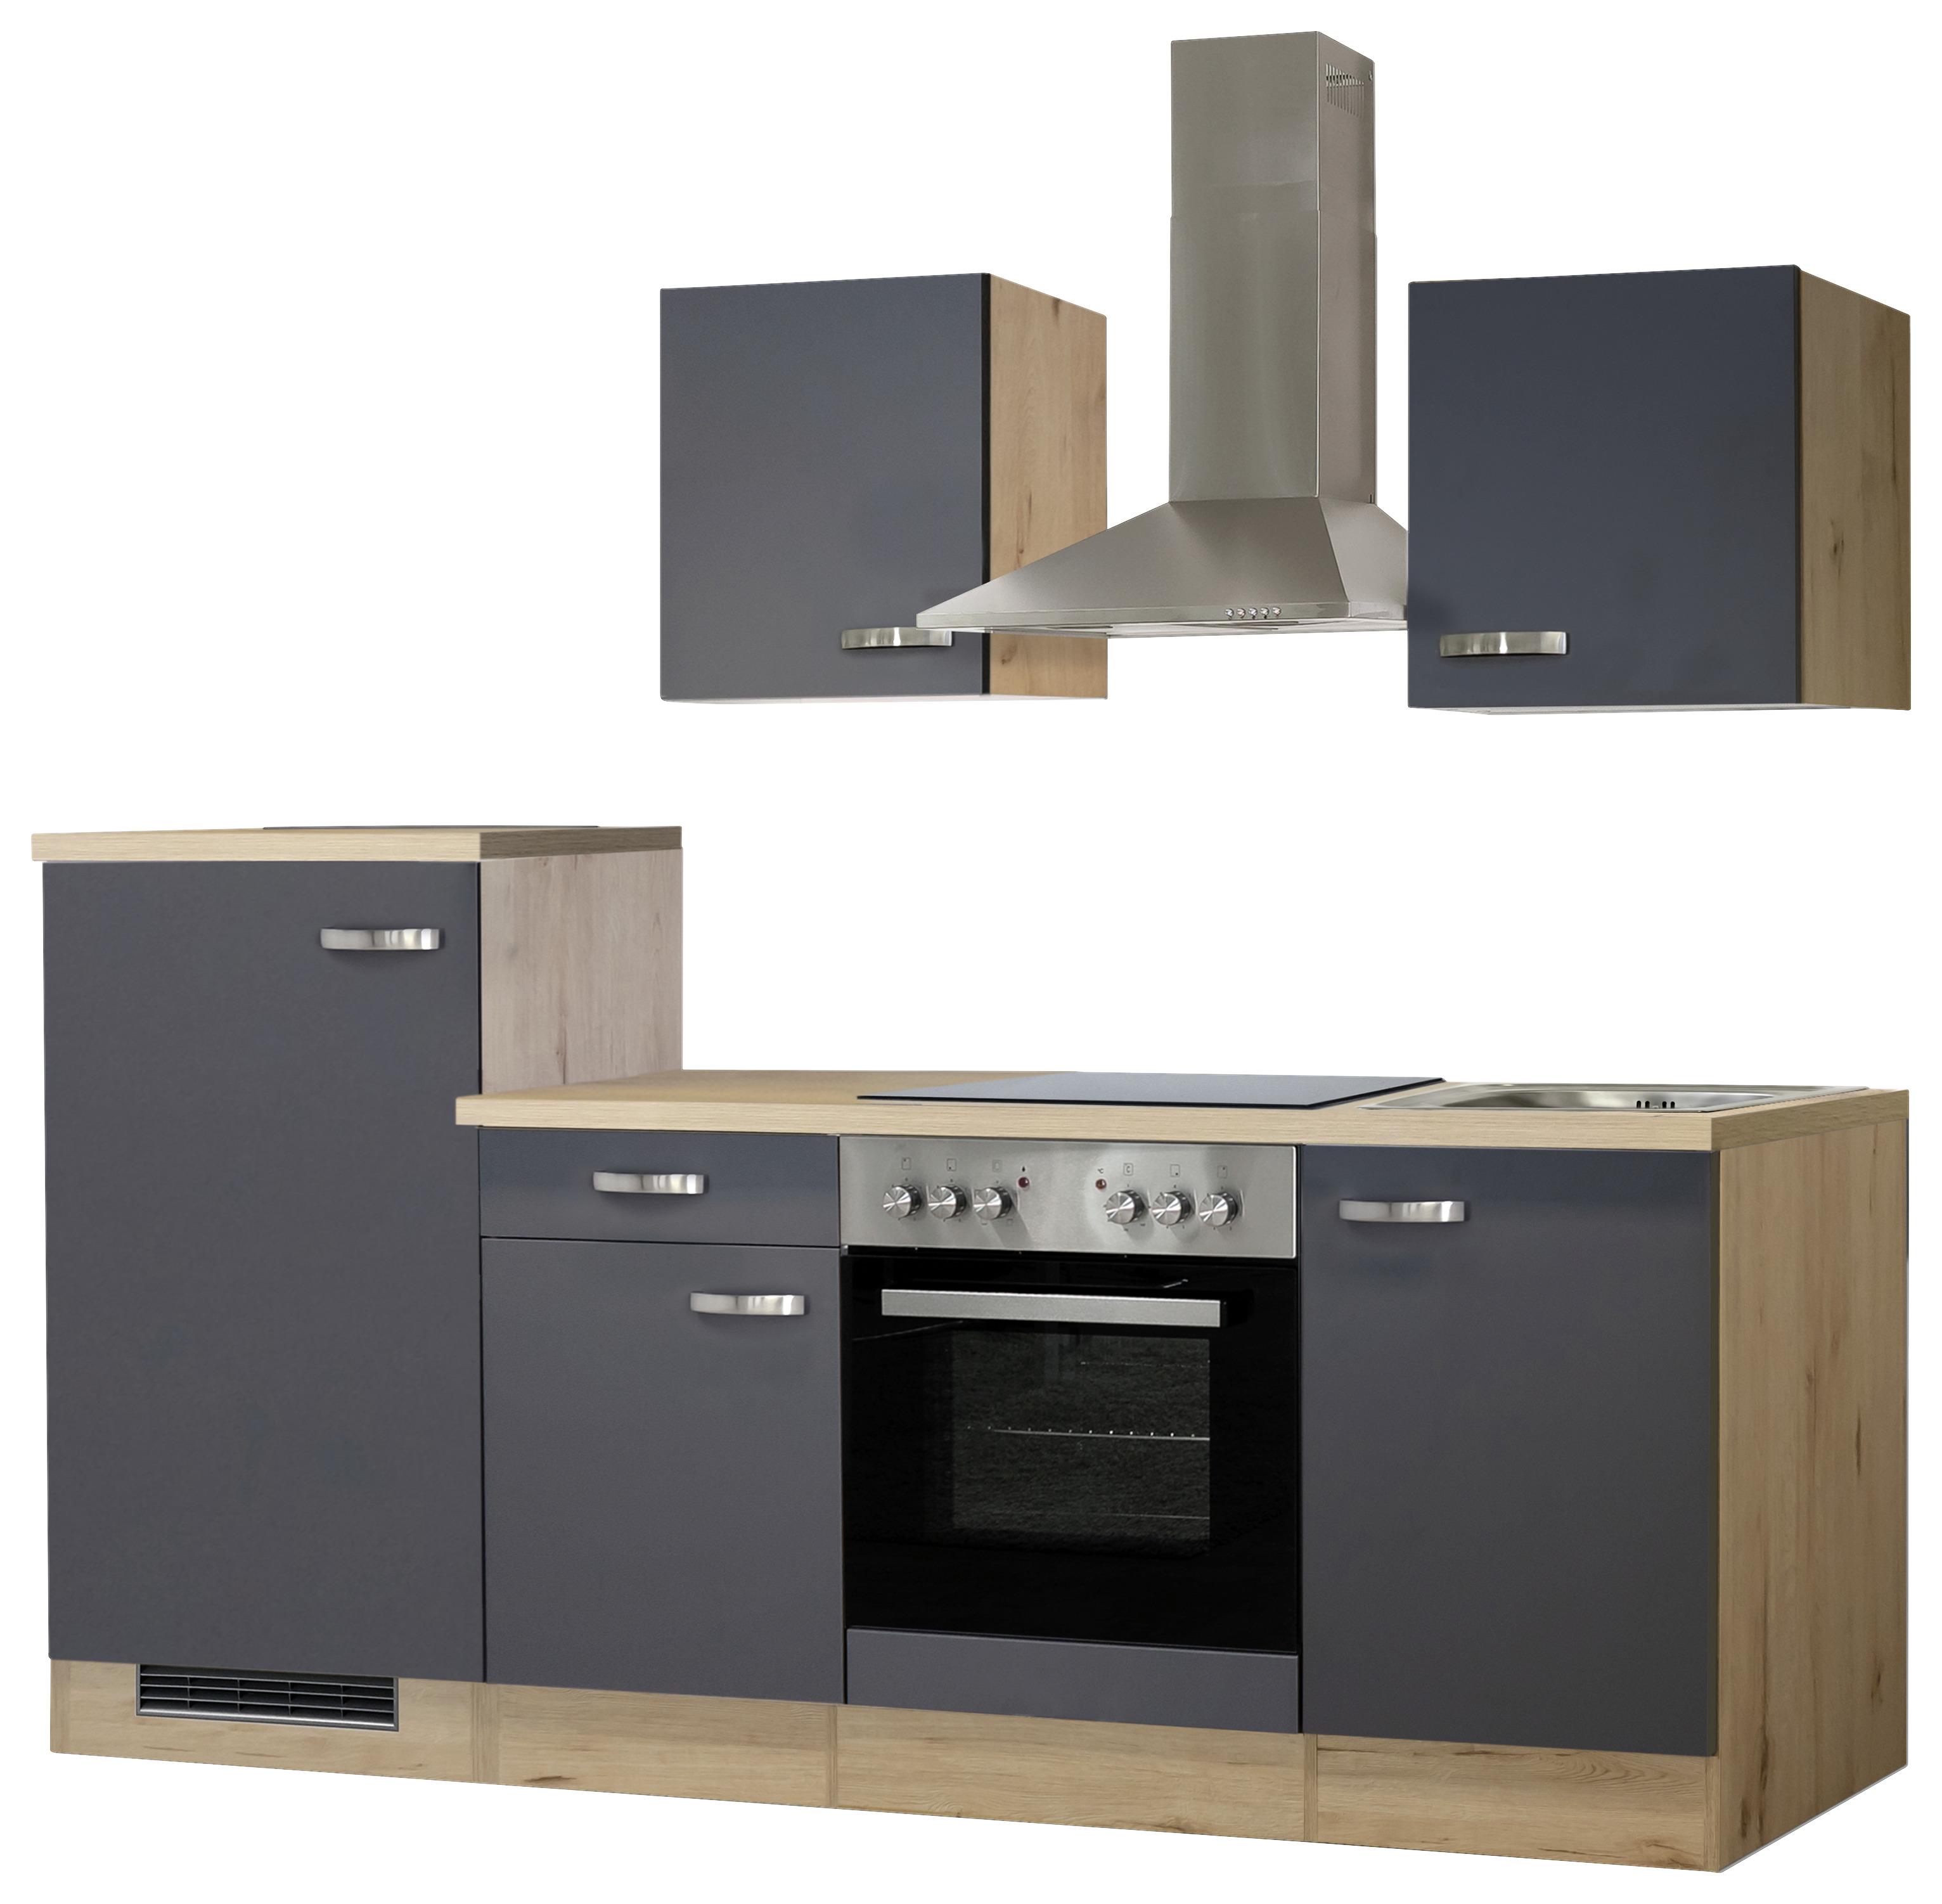 Küchenzeile Shadow mit Geräten 220 cm Grau/Eiche Dekor - Eichefarben/Grau, MODERN, Holzwerkstoff (220cm)